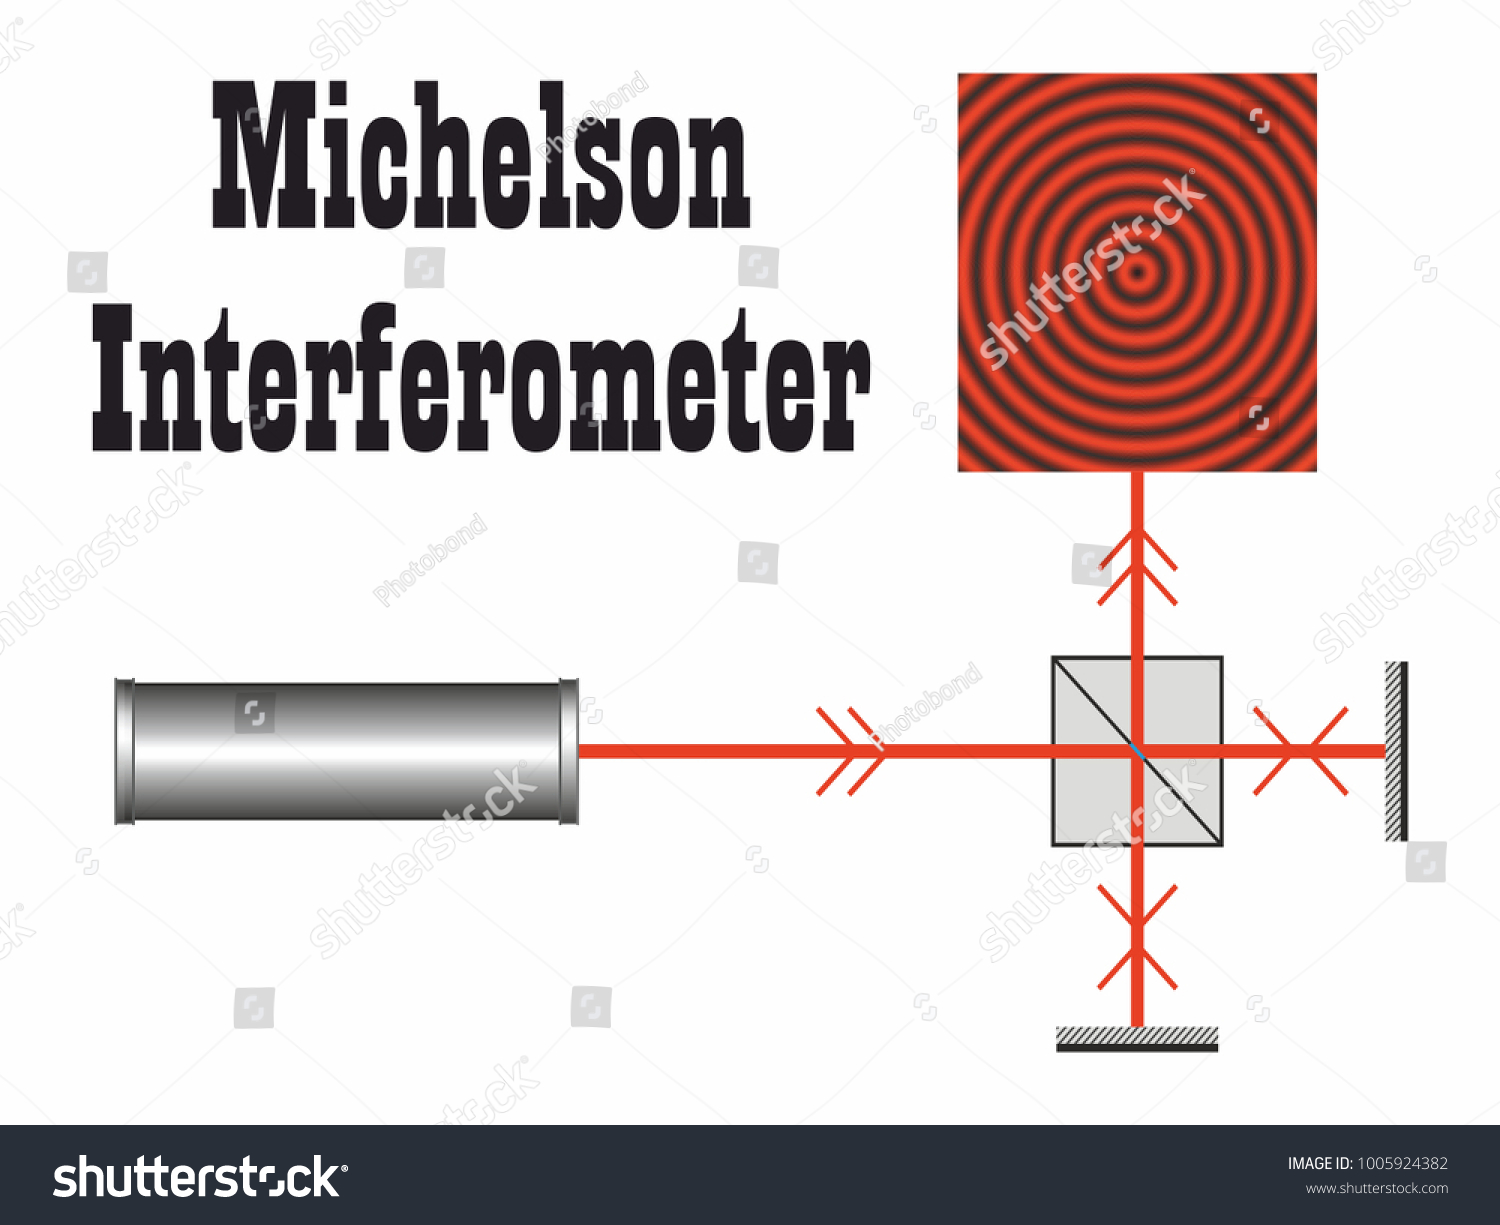 Albert a. michelson Images, Stock Photos & Vectors | Shutterstock